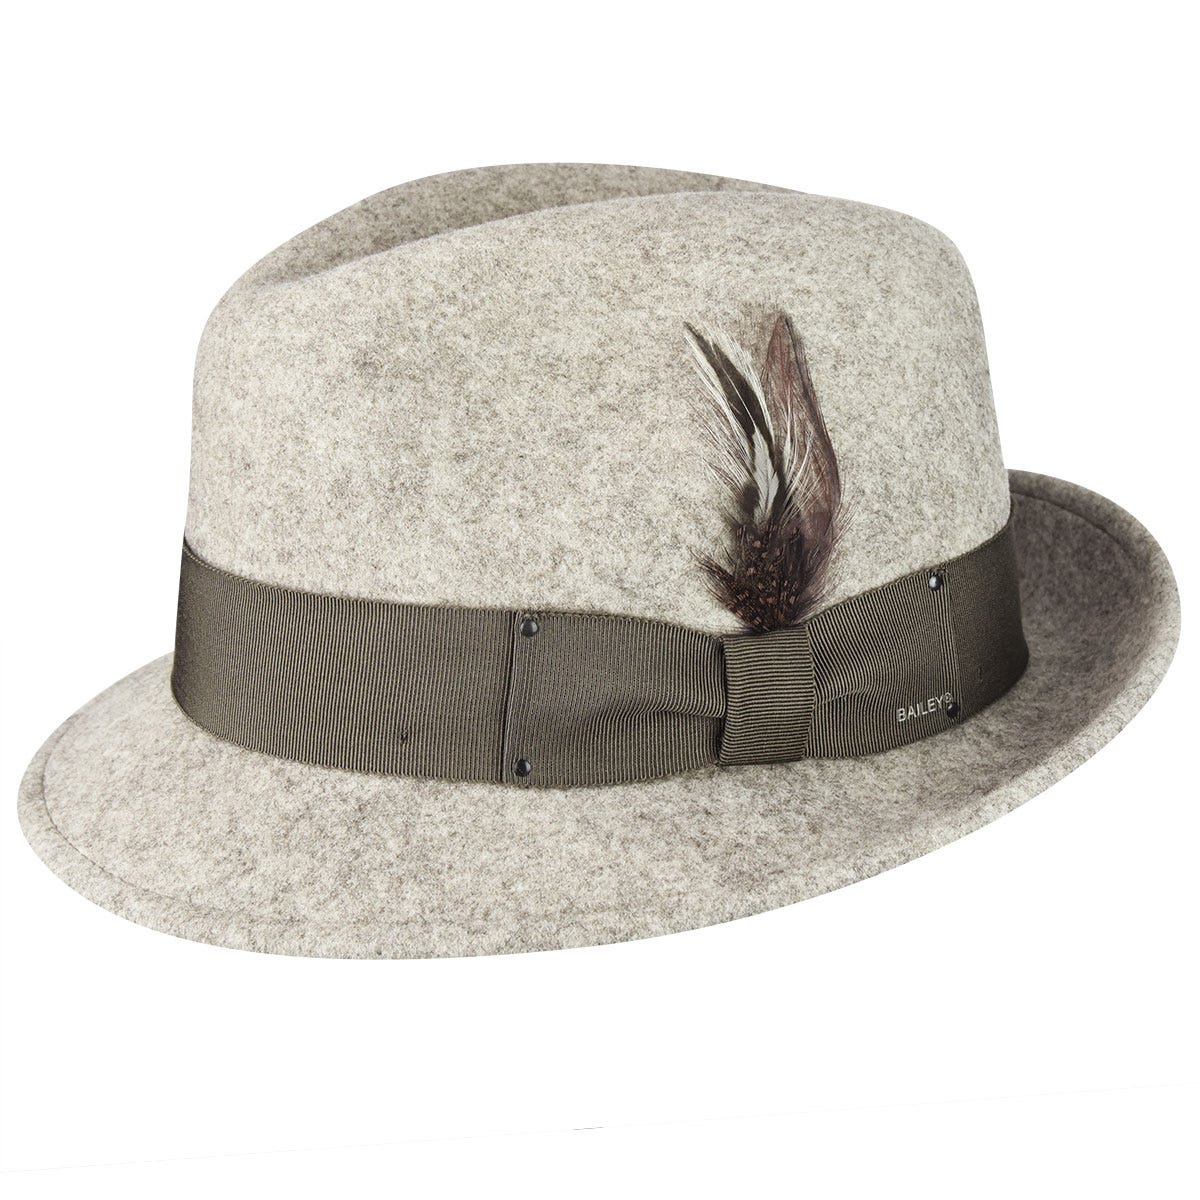 Kangol Bucket Hats - Shop at Hip Head Gear.com